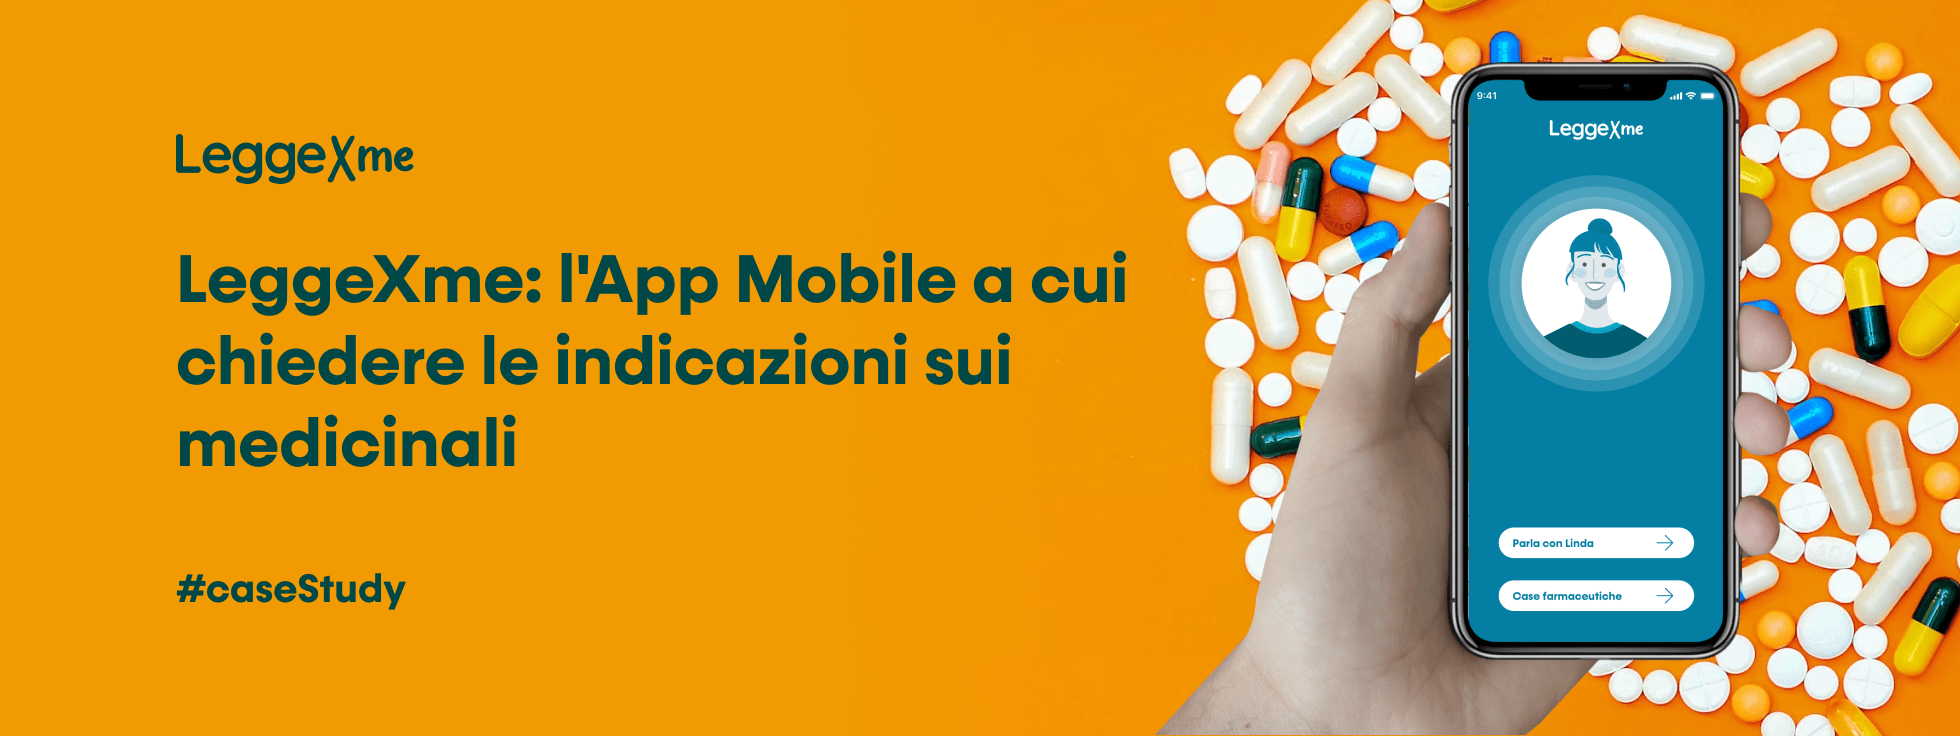 LeggeXme: l'app mobile a cui chiedere indicazioni sui medicinali